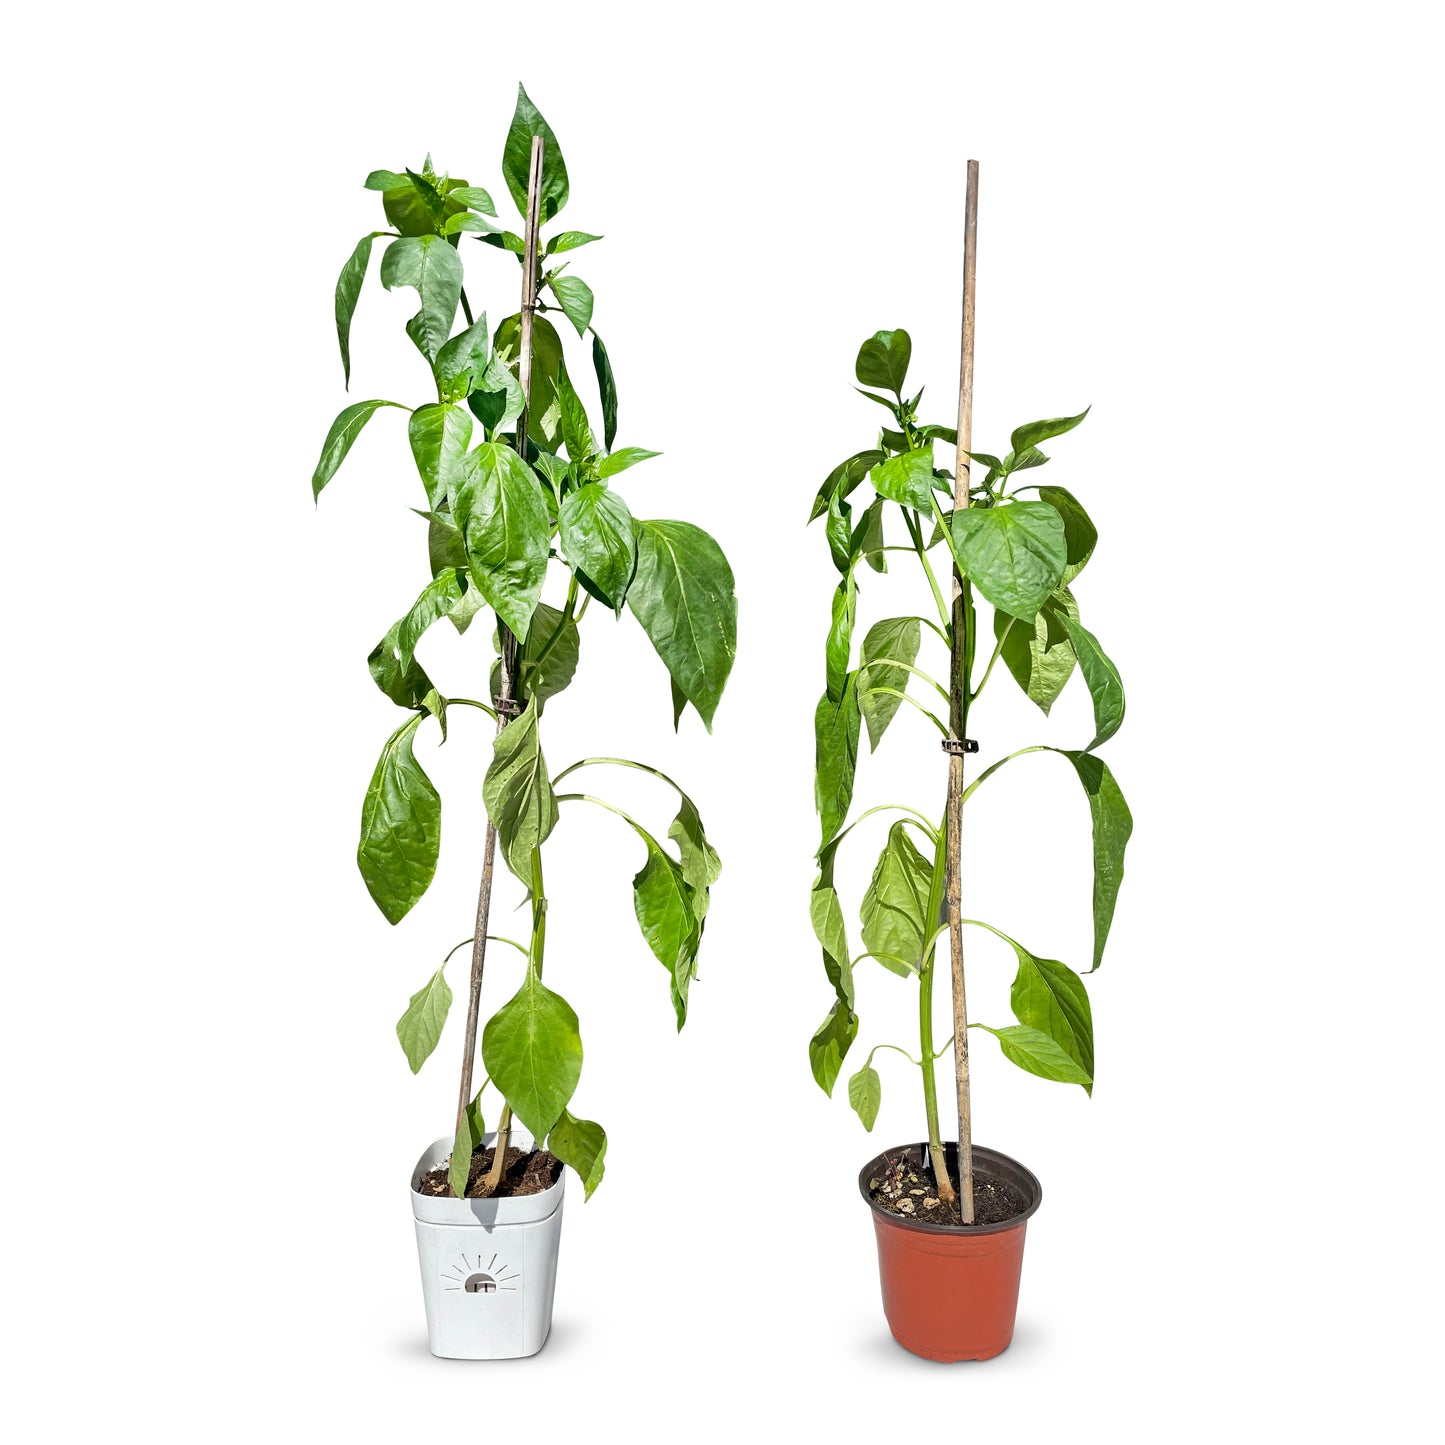 3-Inch Root-Pruning Garden Pots